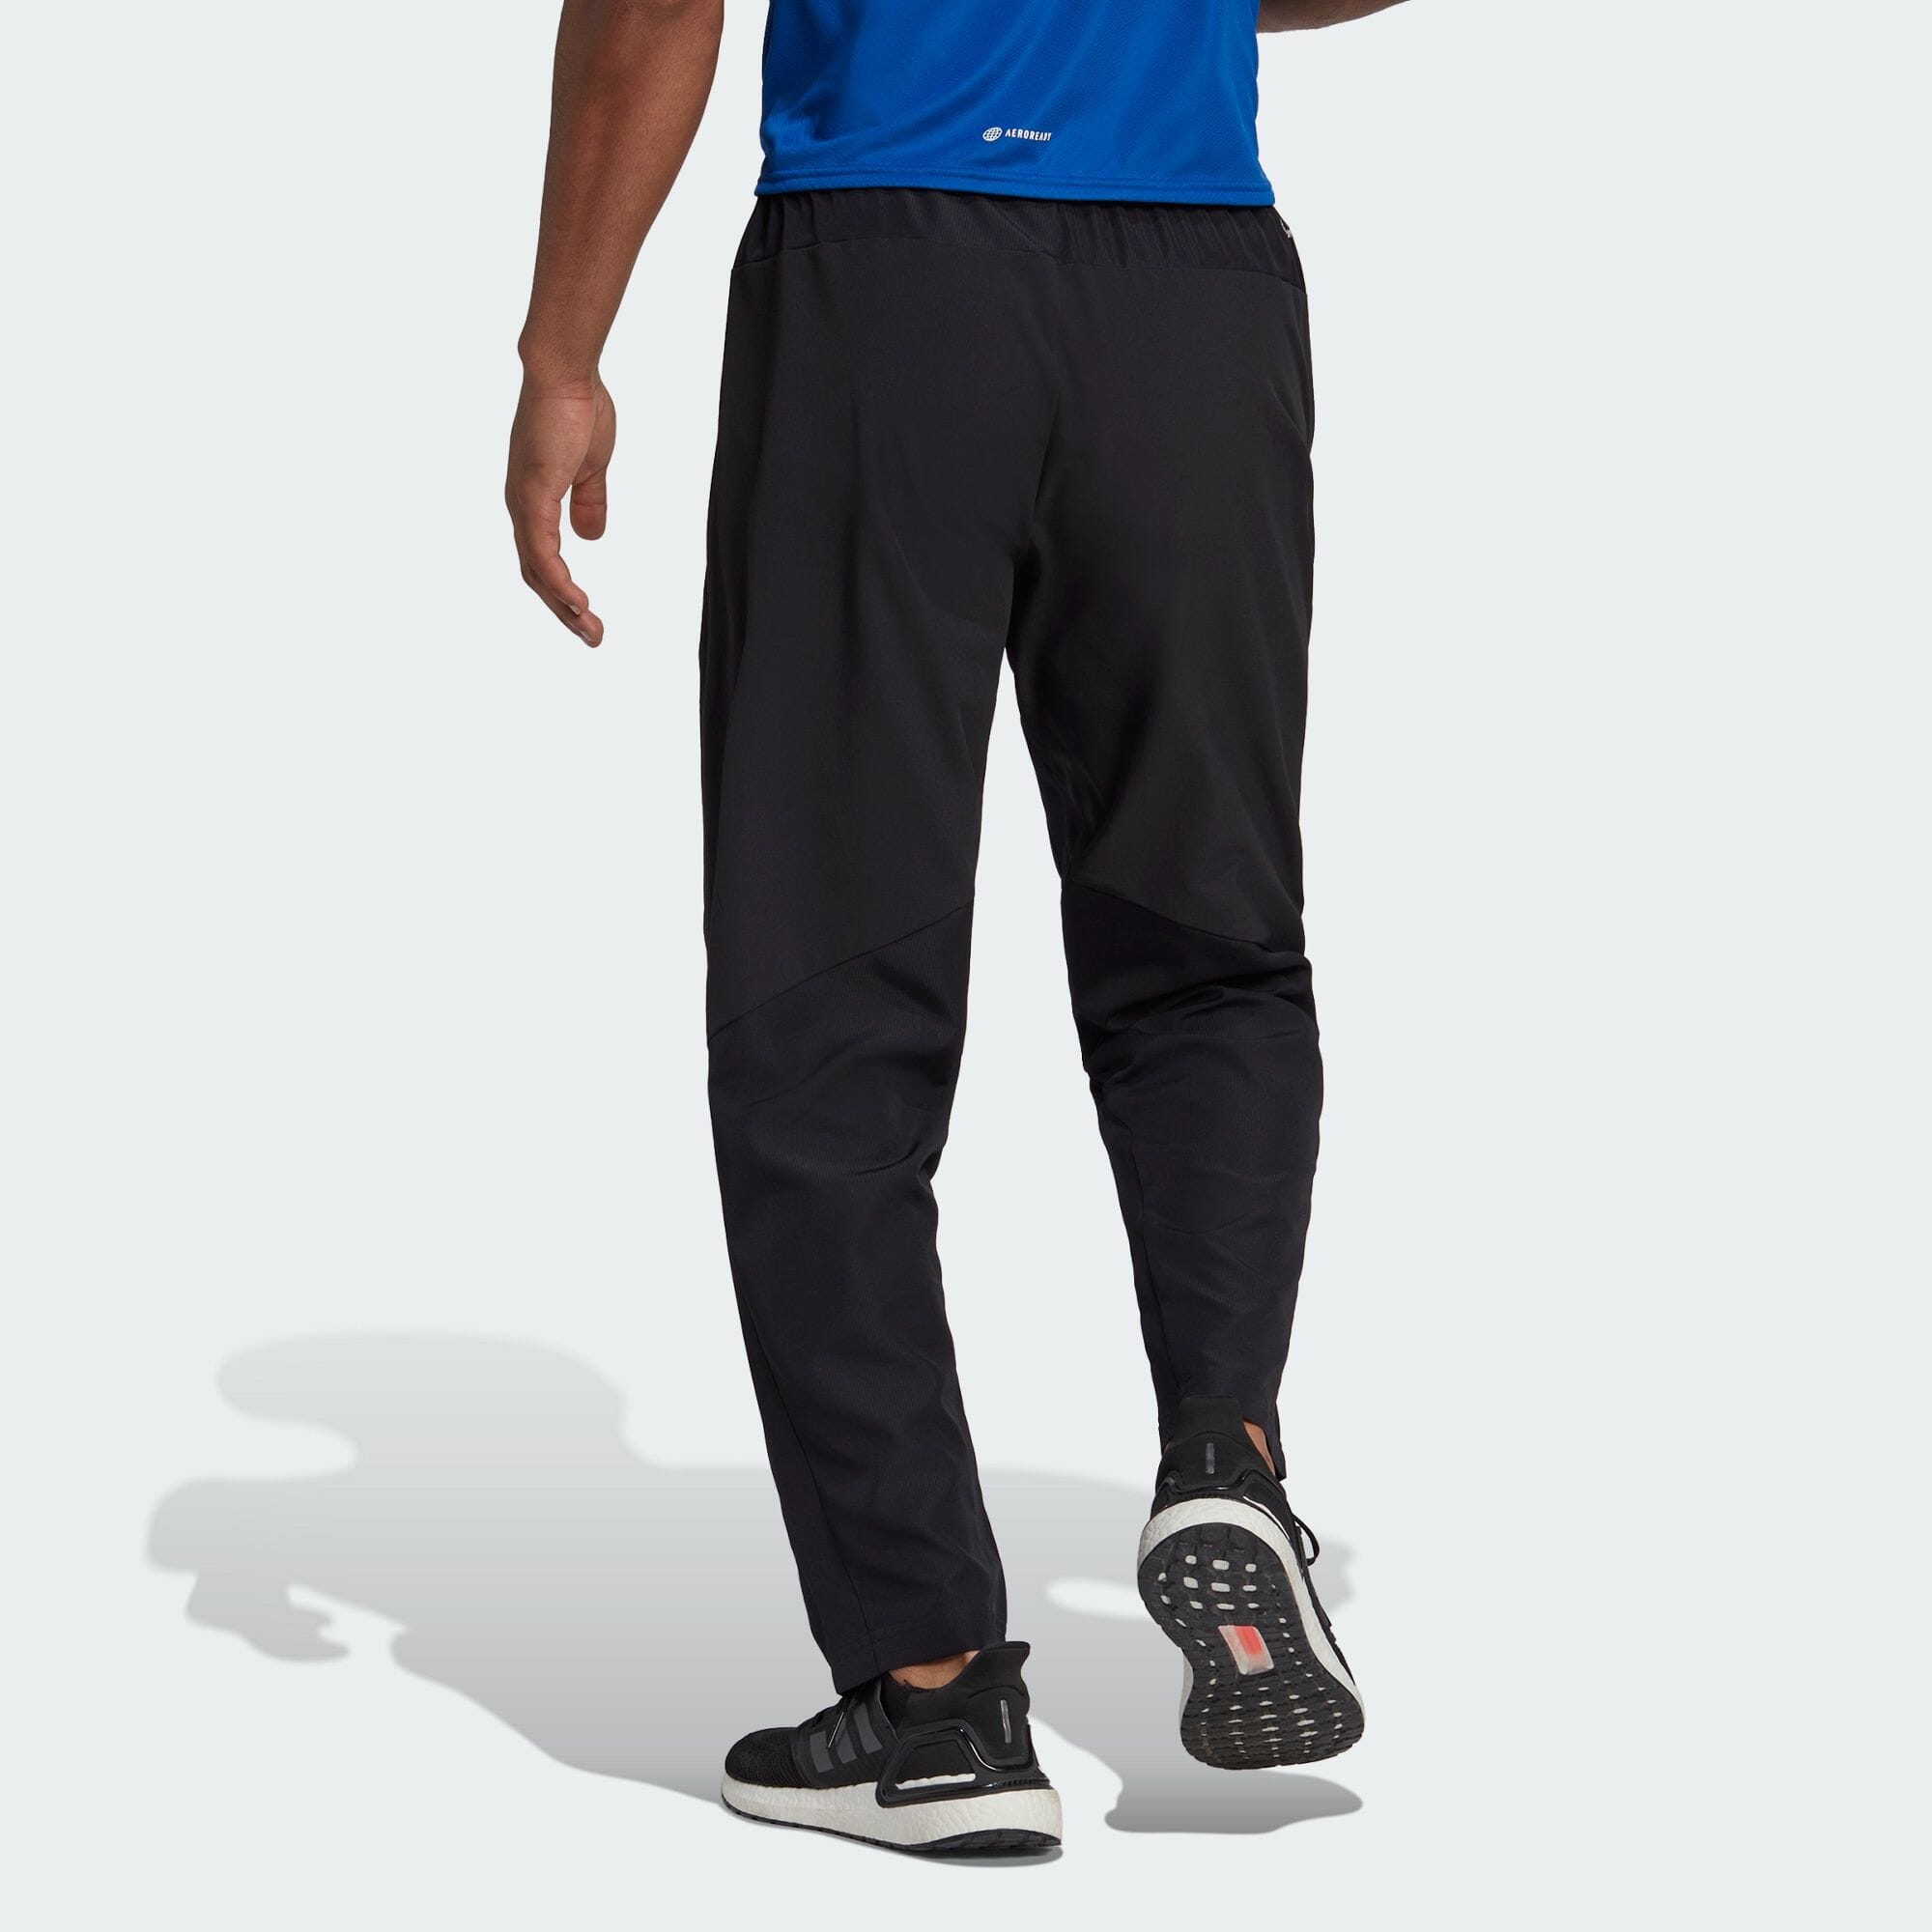 アディダス adidas 返品可 ジム・トレーニング Designed for Training 半袖Tシャツ メンズ ウェア・服 トップス Tシャツ 青 ブルー HB9205 半袖 streng